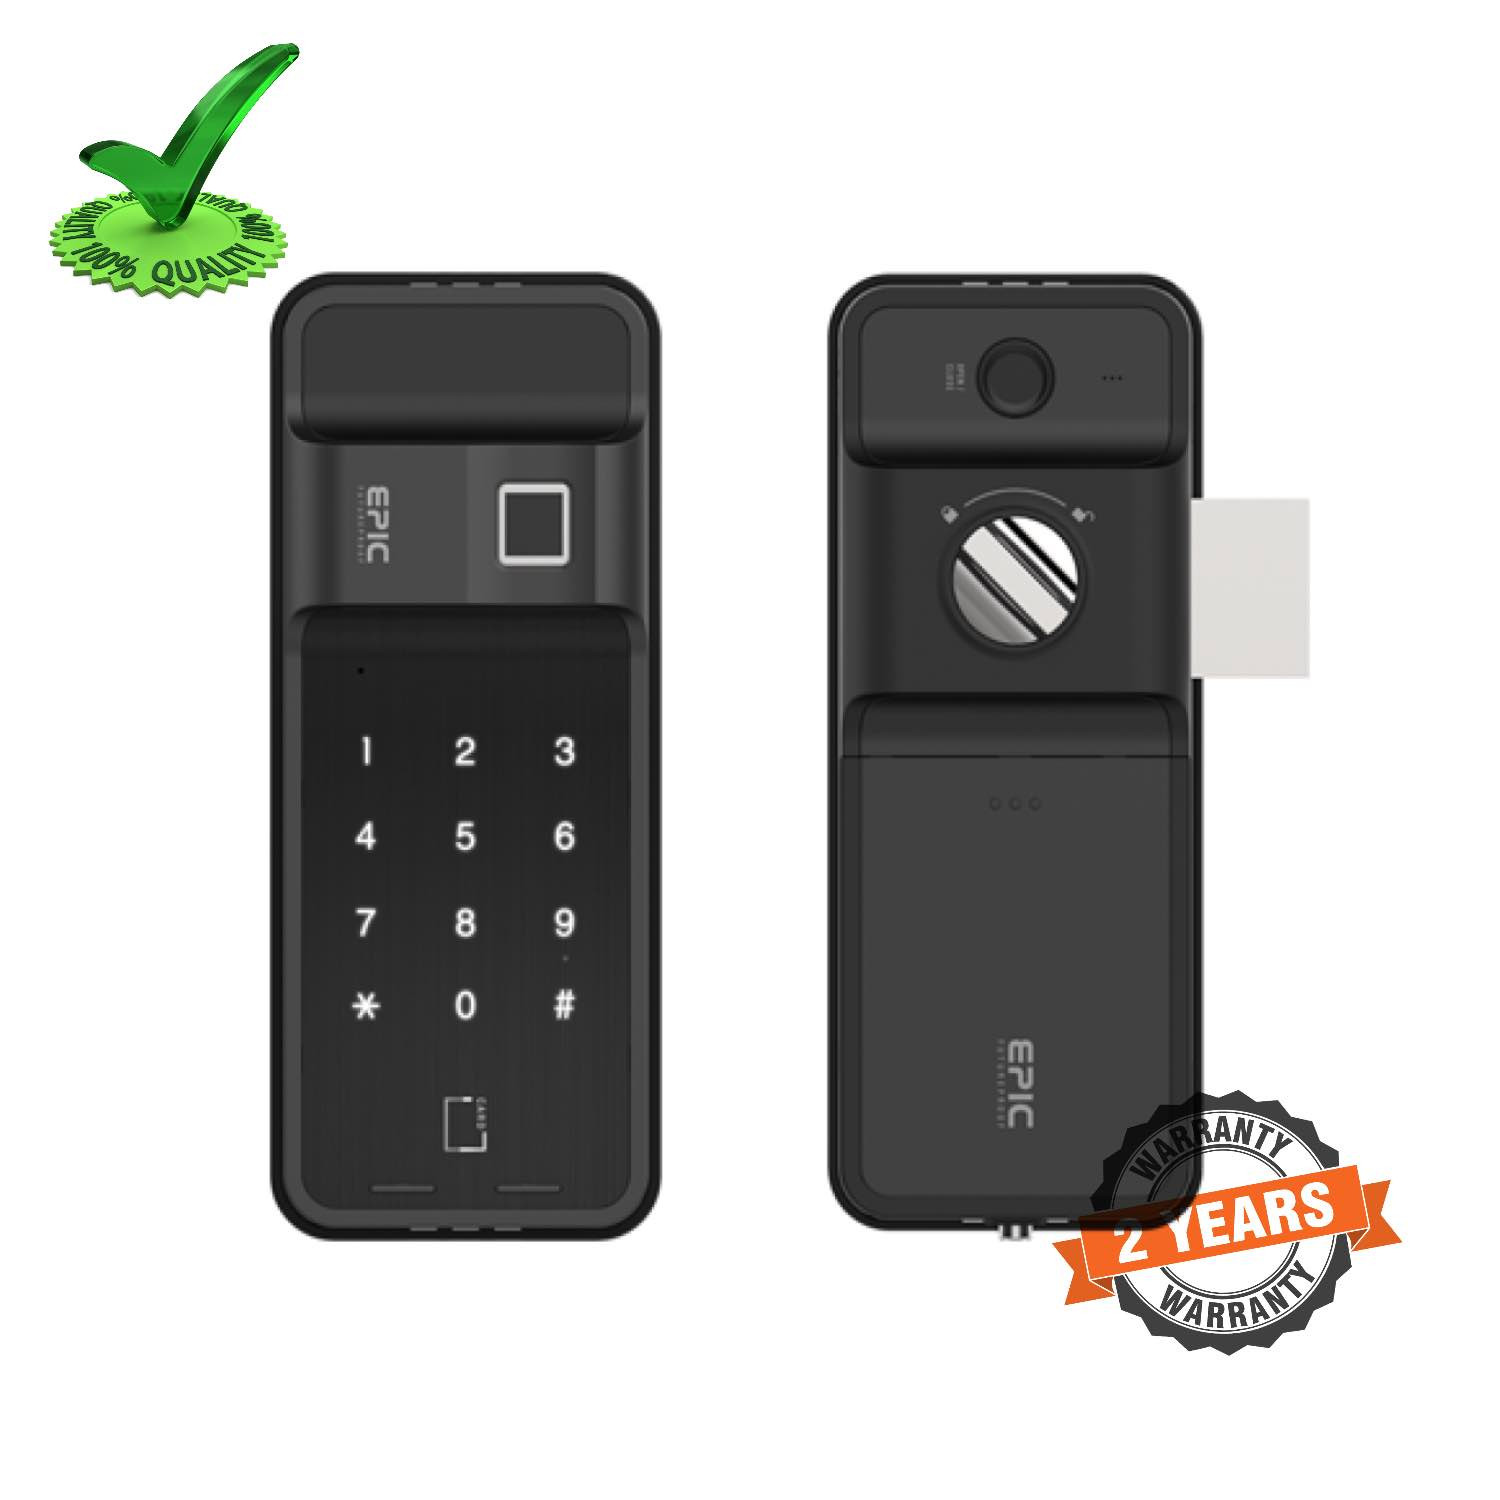 Epic ES-F500D 4way to Open Finger Print Smart Door Lock